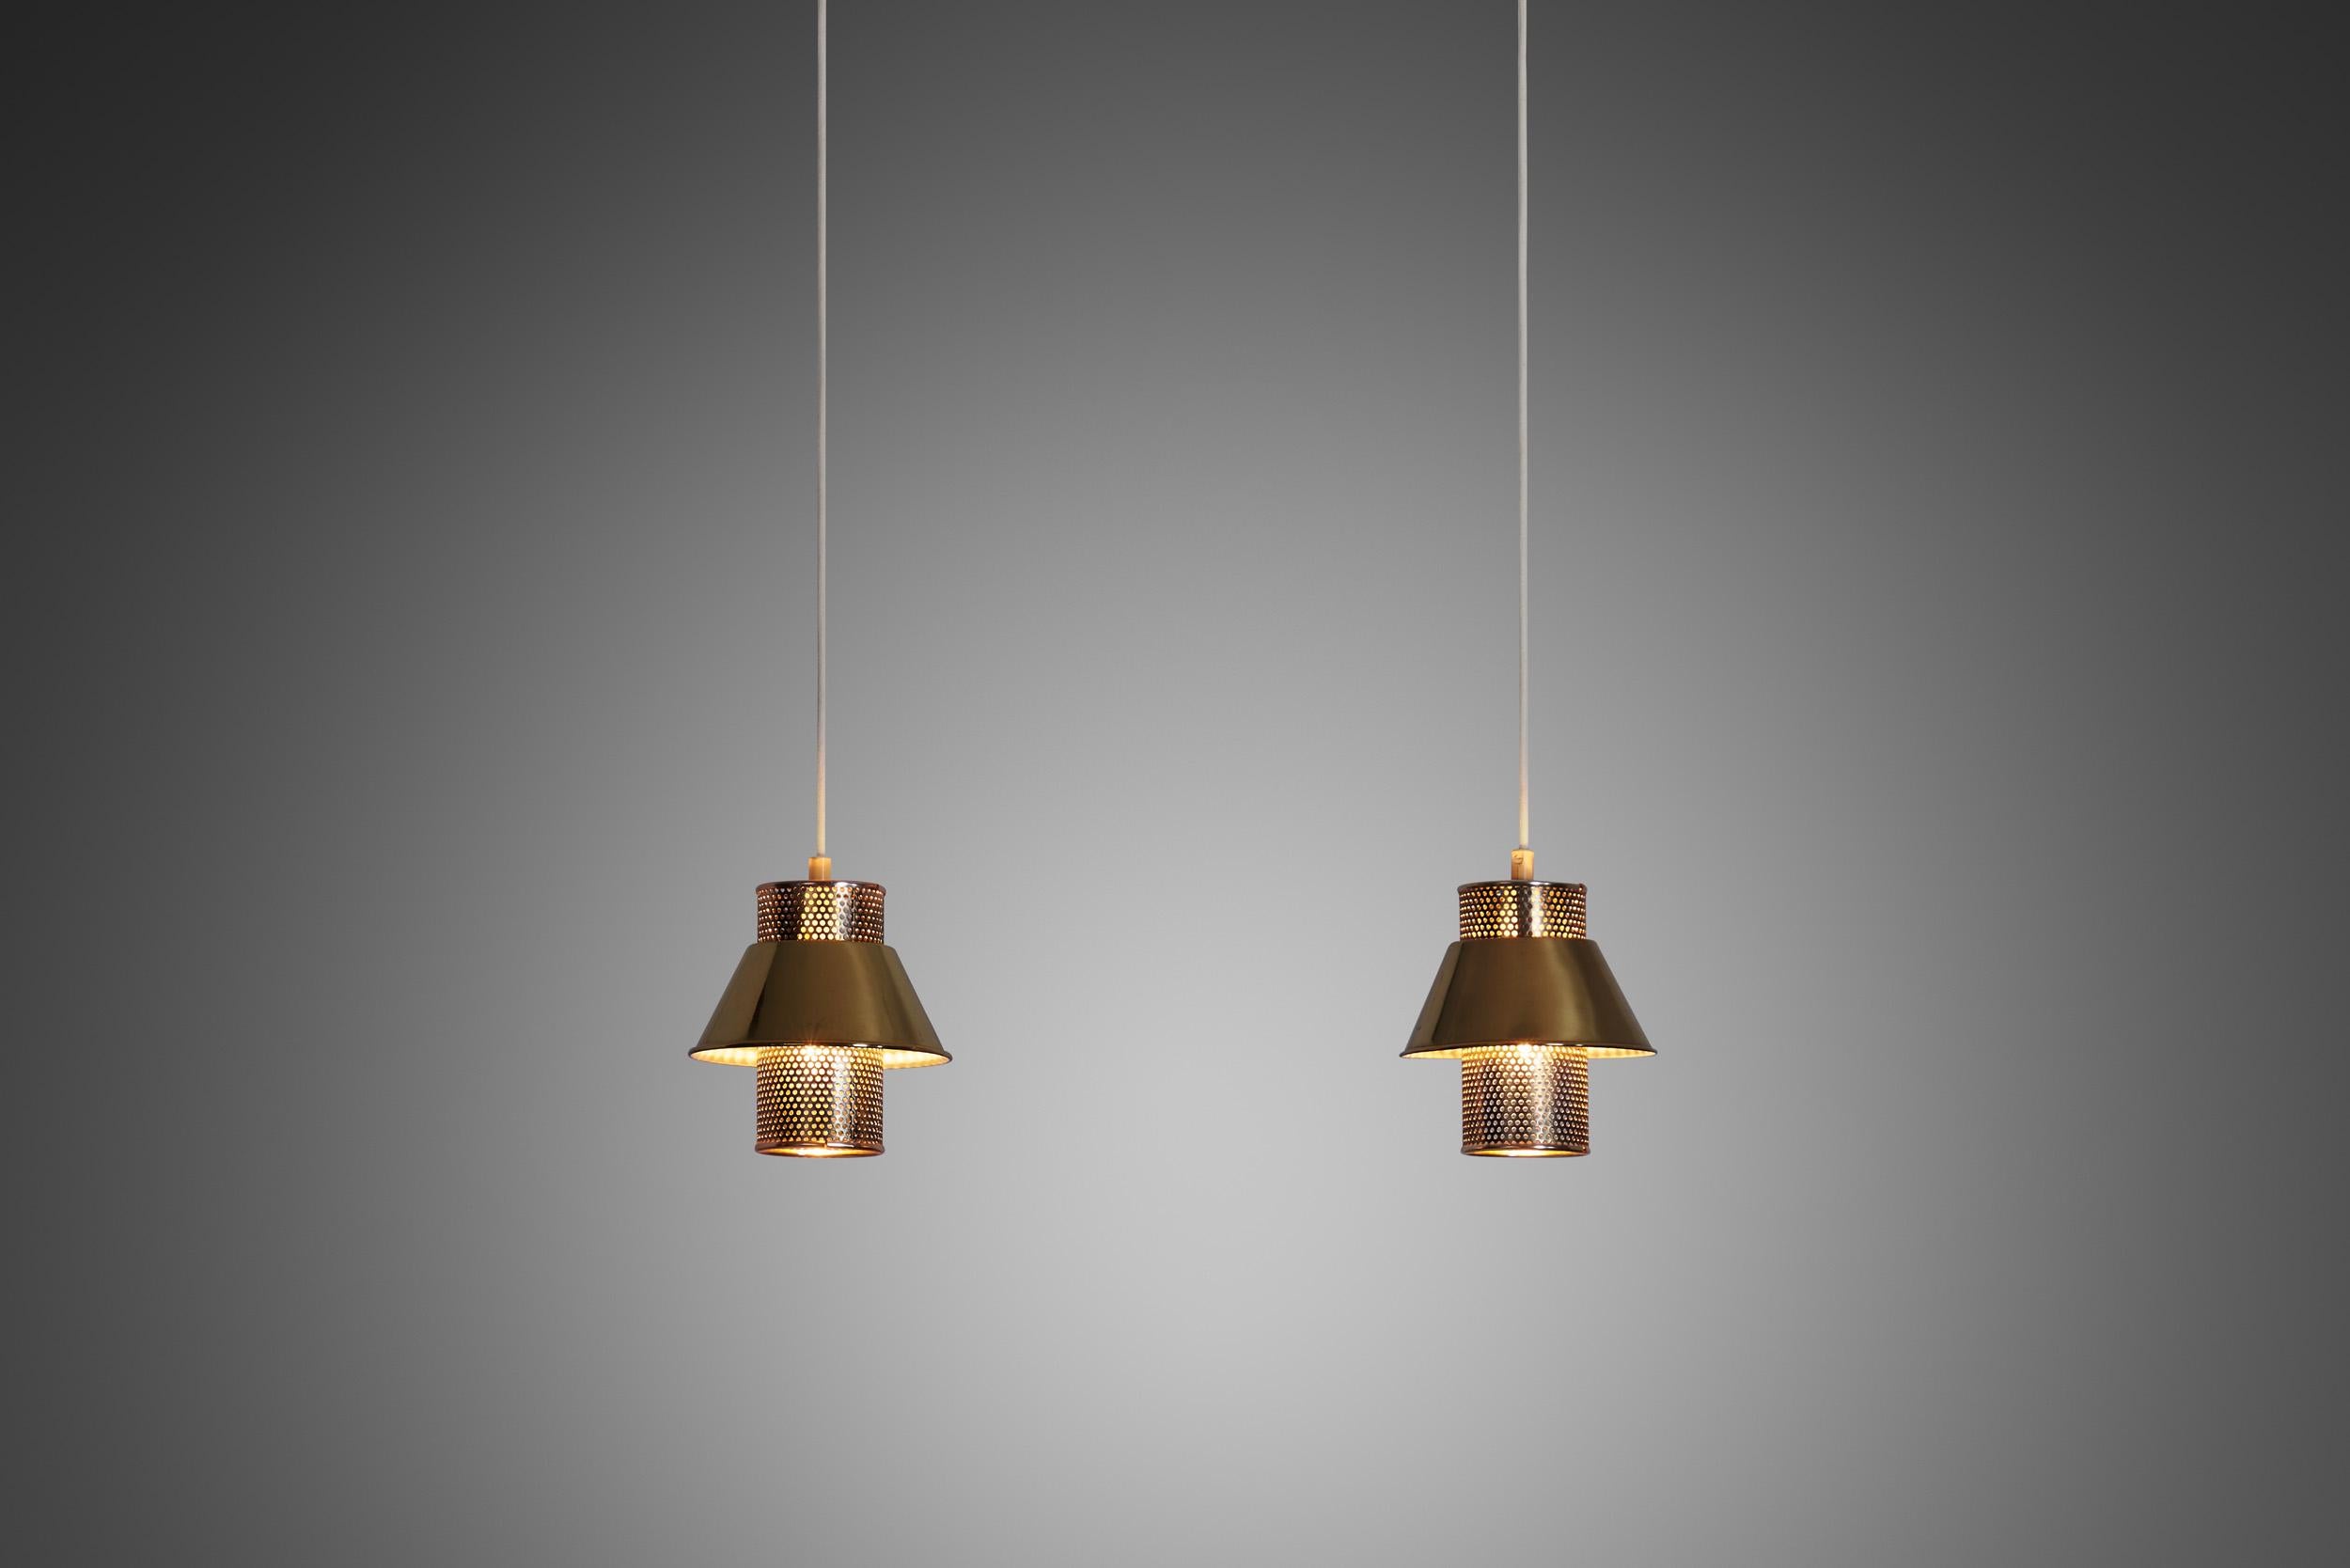 La lampe suspendue T766 est un exemple étonnant du design moderne suédois. Hans-Agne Agnes était un éminent designer et fabricant de luminaires qui a joué un rôle crucial dans l'élaboration de l'esthétique du design suédois au milieu et même à la